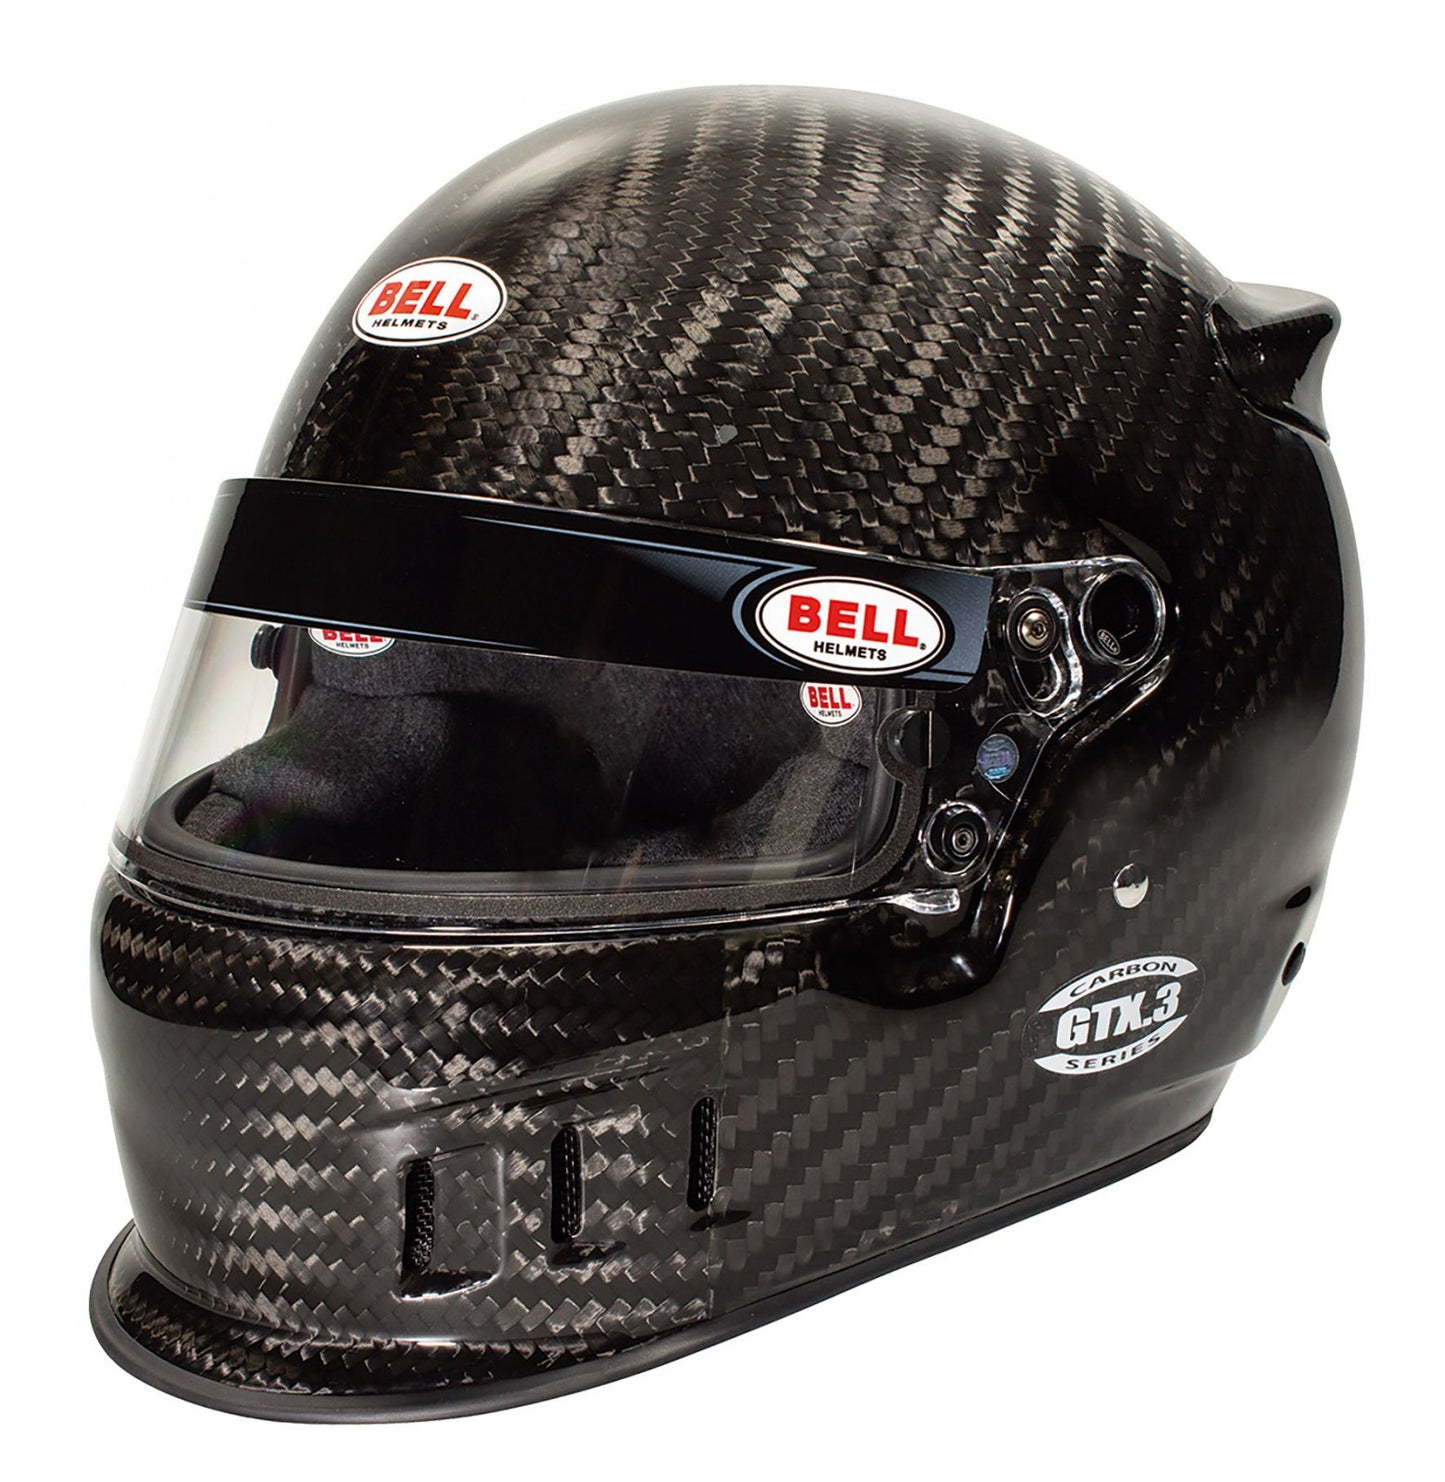 Bell GTX.3 Carbon Racing Helmet - 59 cm